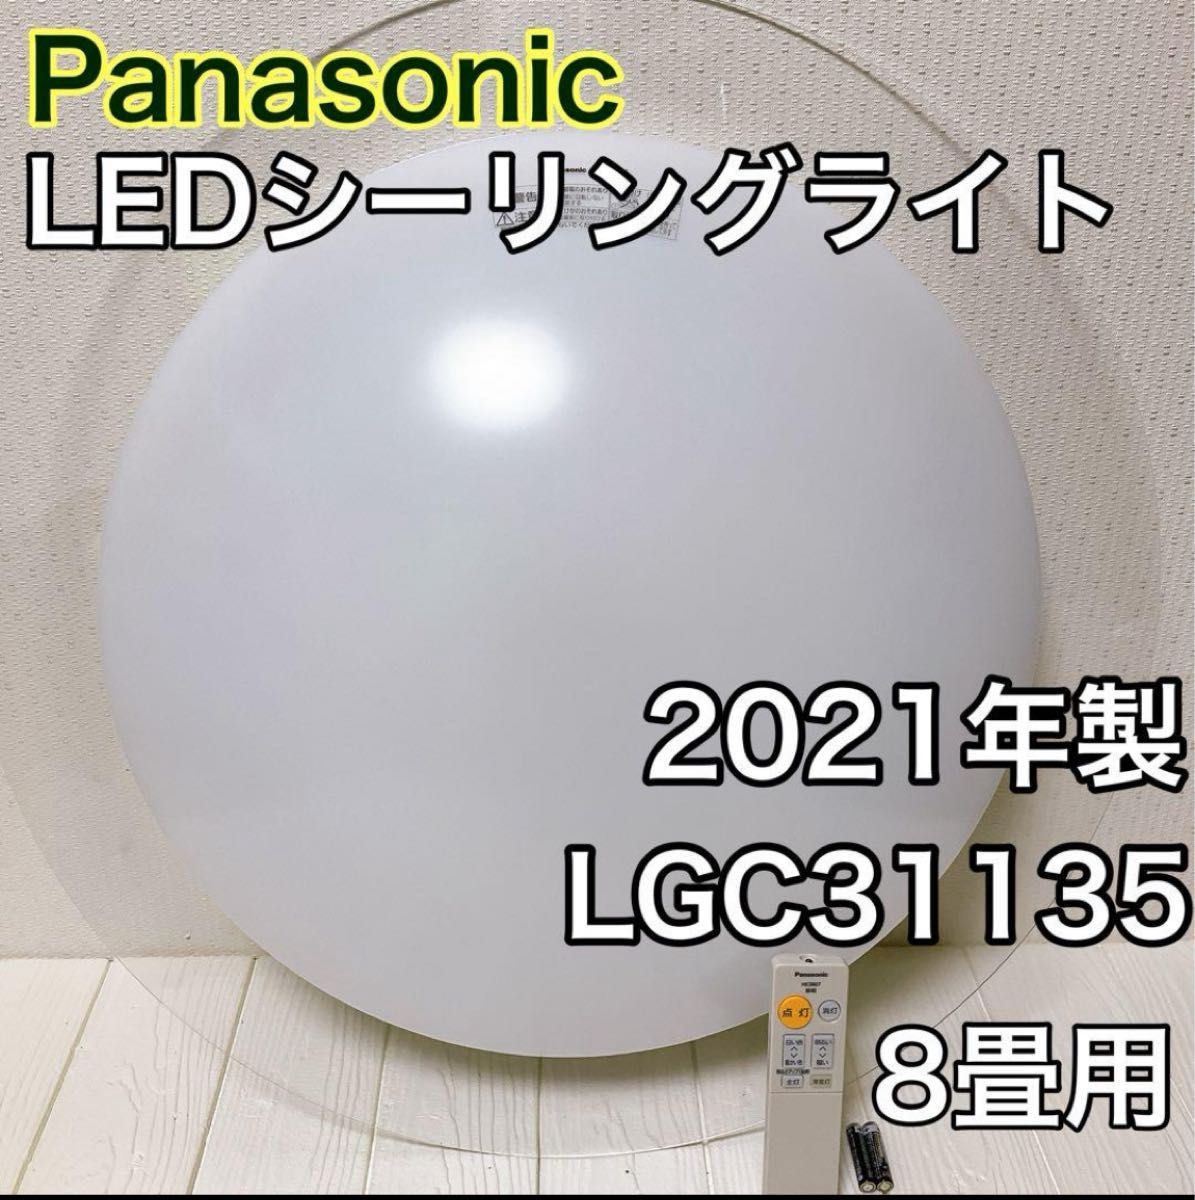 Panasonic LEDシーリングライト LGC31135 パナソニック